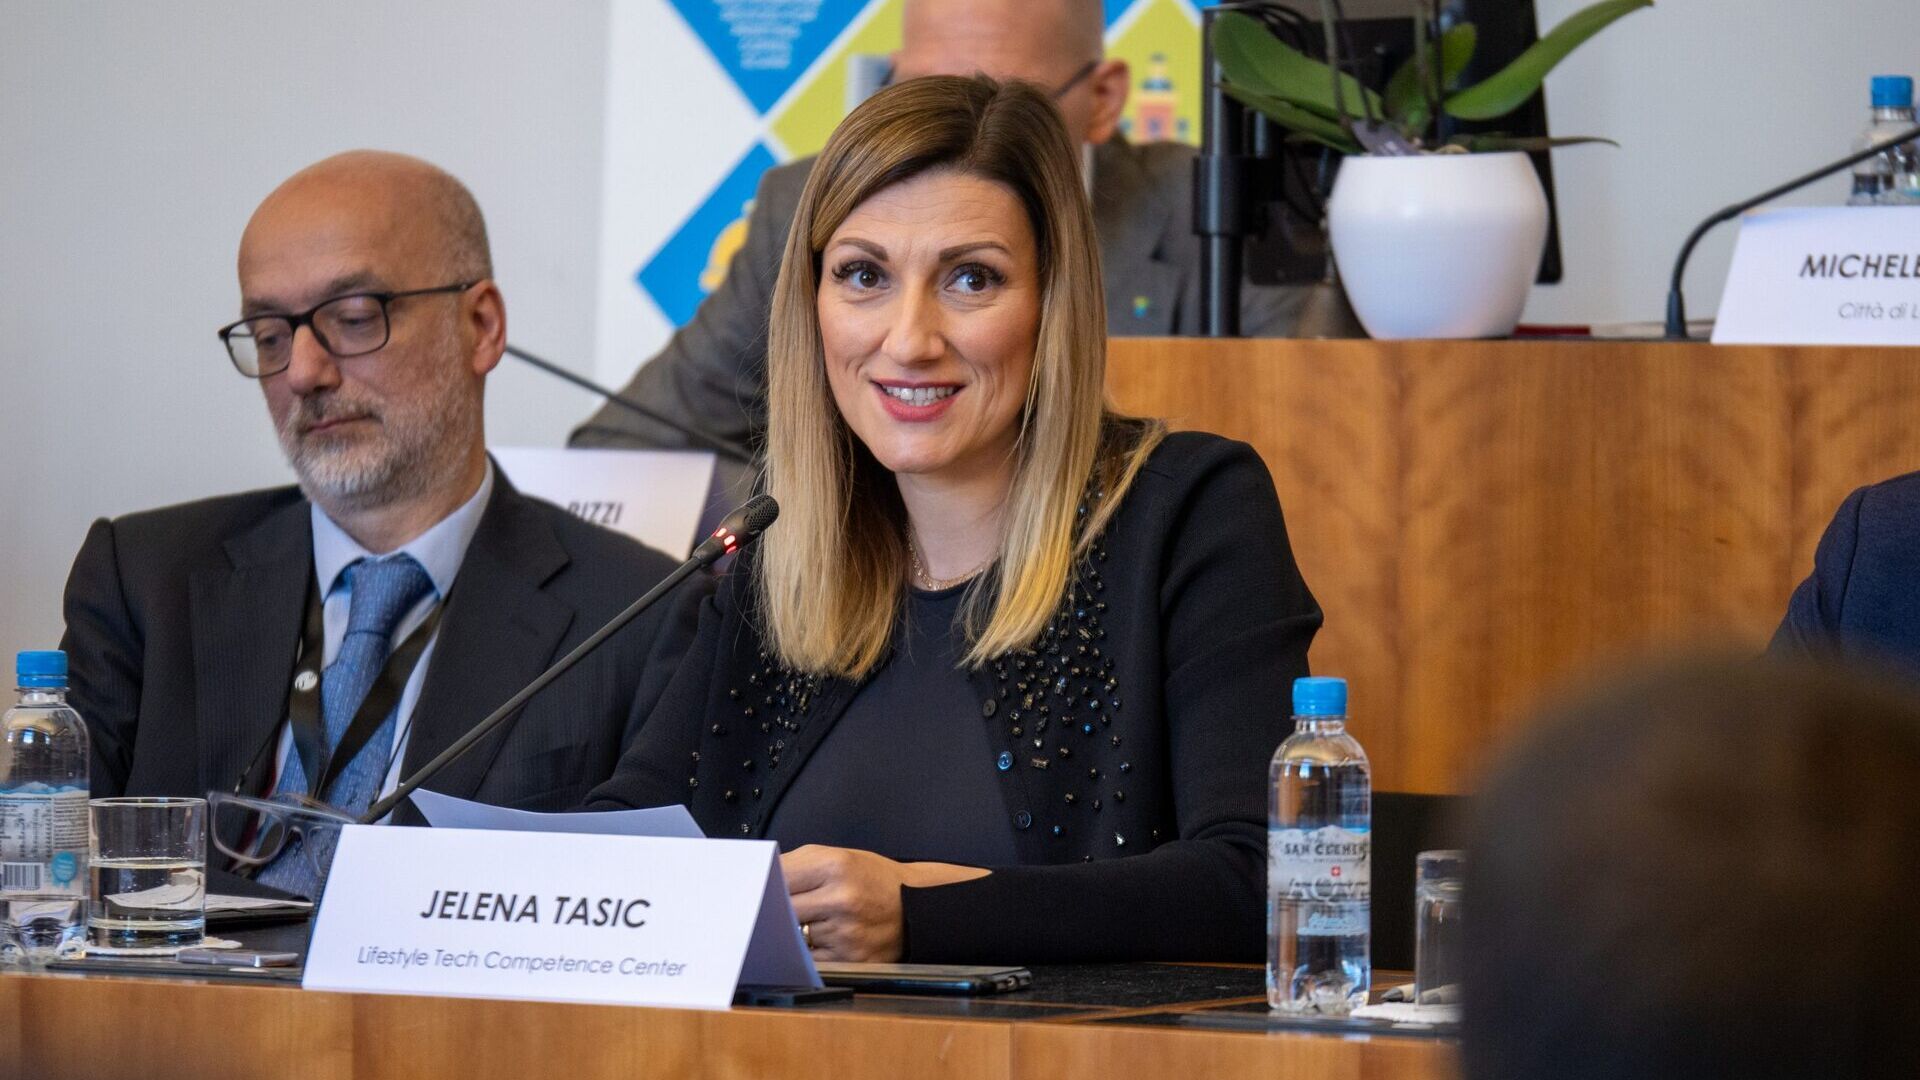 LTCC: Jelena Tašić Pizzolato là Giám đốc điều hành của Hiệp hội Trung tâm Năng lực Công nghệ Phong cách sống